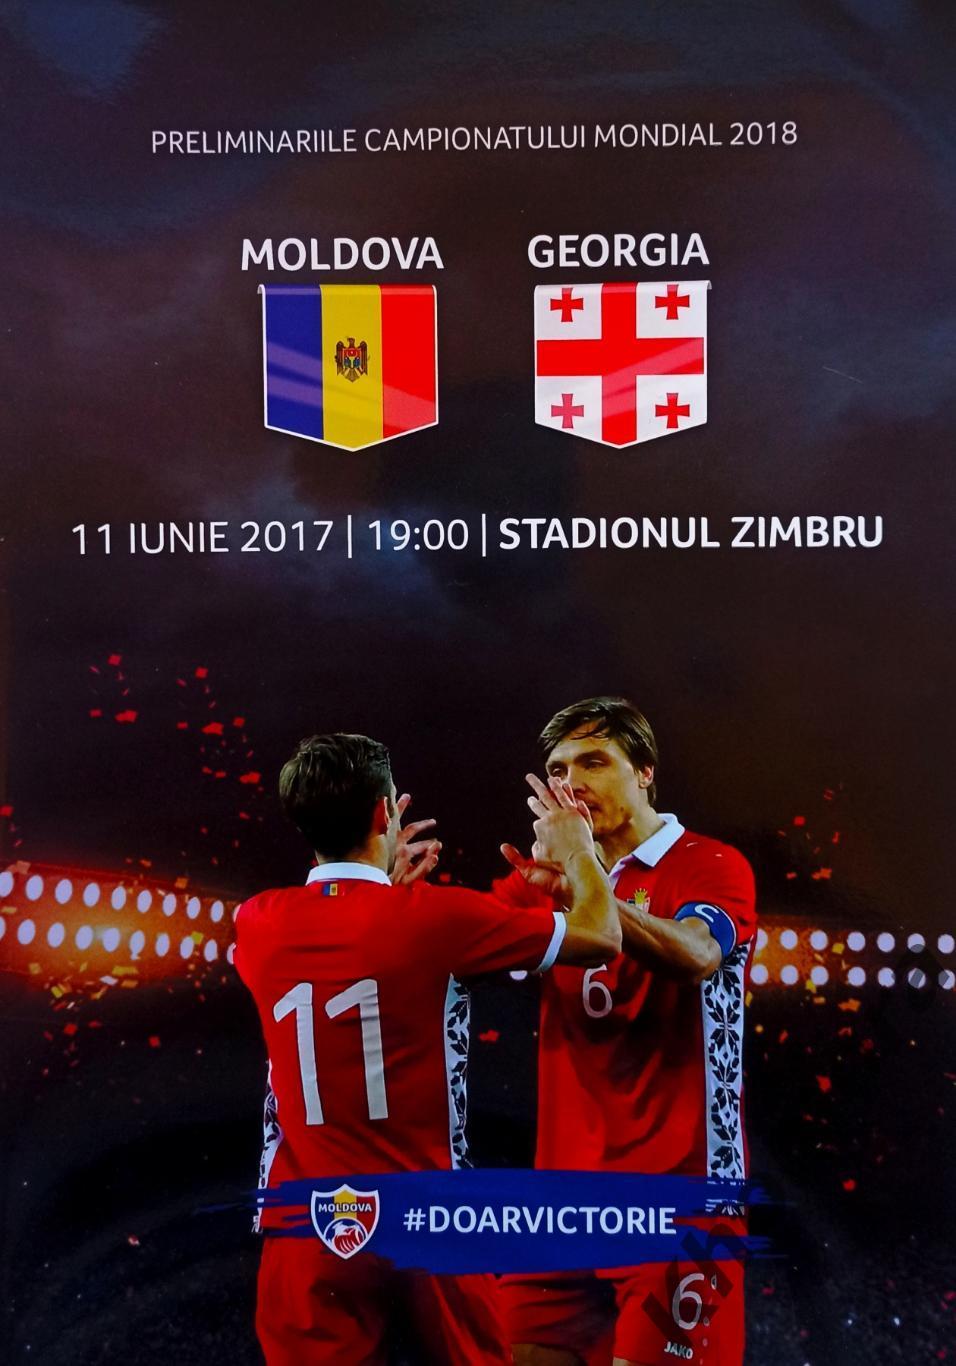 Молдова - Грузия 11.06.2017 - официальная программа